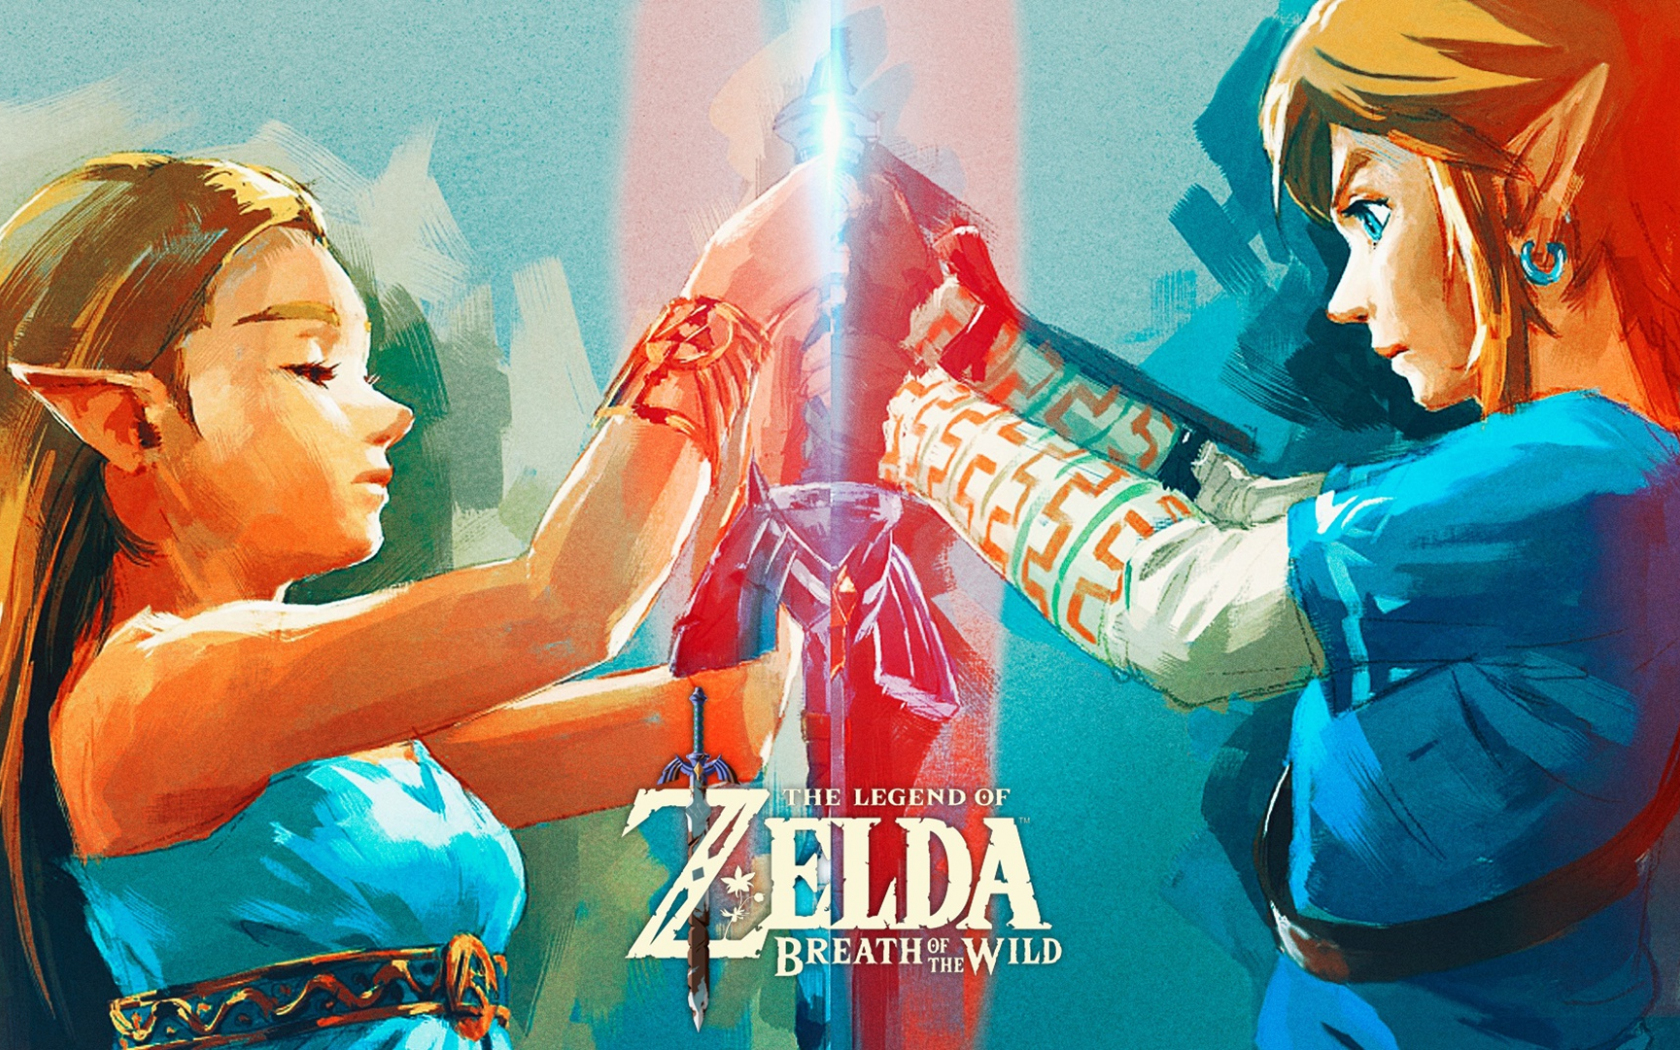 Desktop Wallpaper The Legend Of Zelda Breath Of The Wild Video Game Zelda Hd Image Picture Background C0kntl